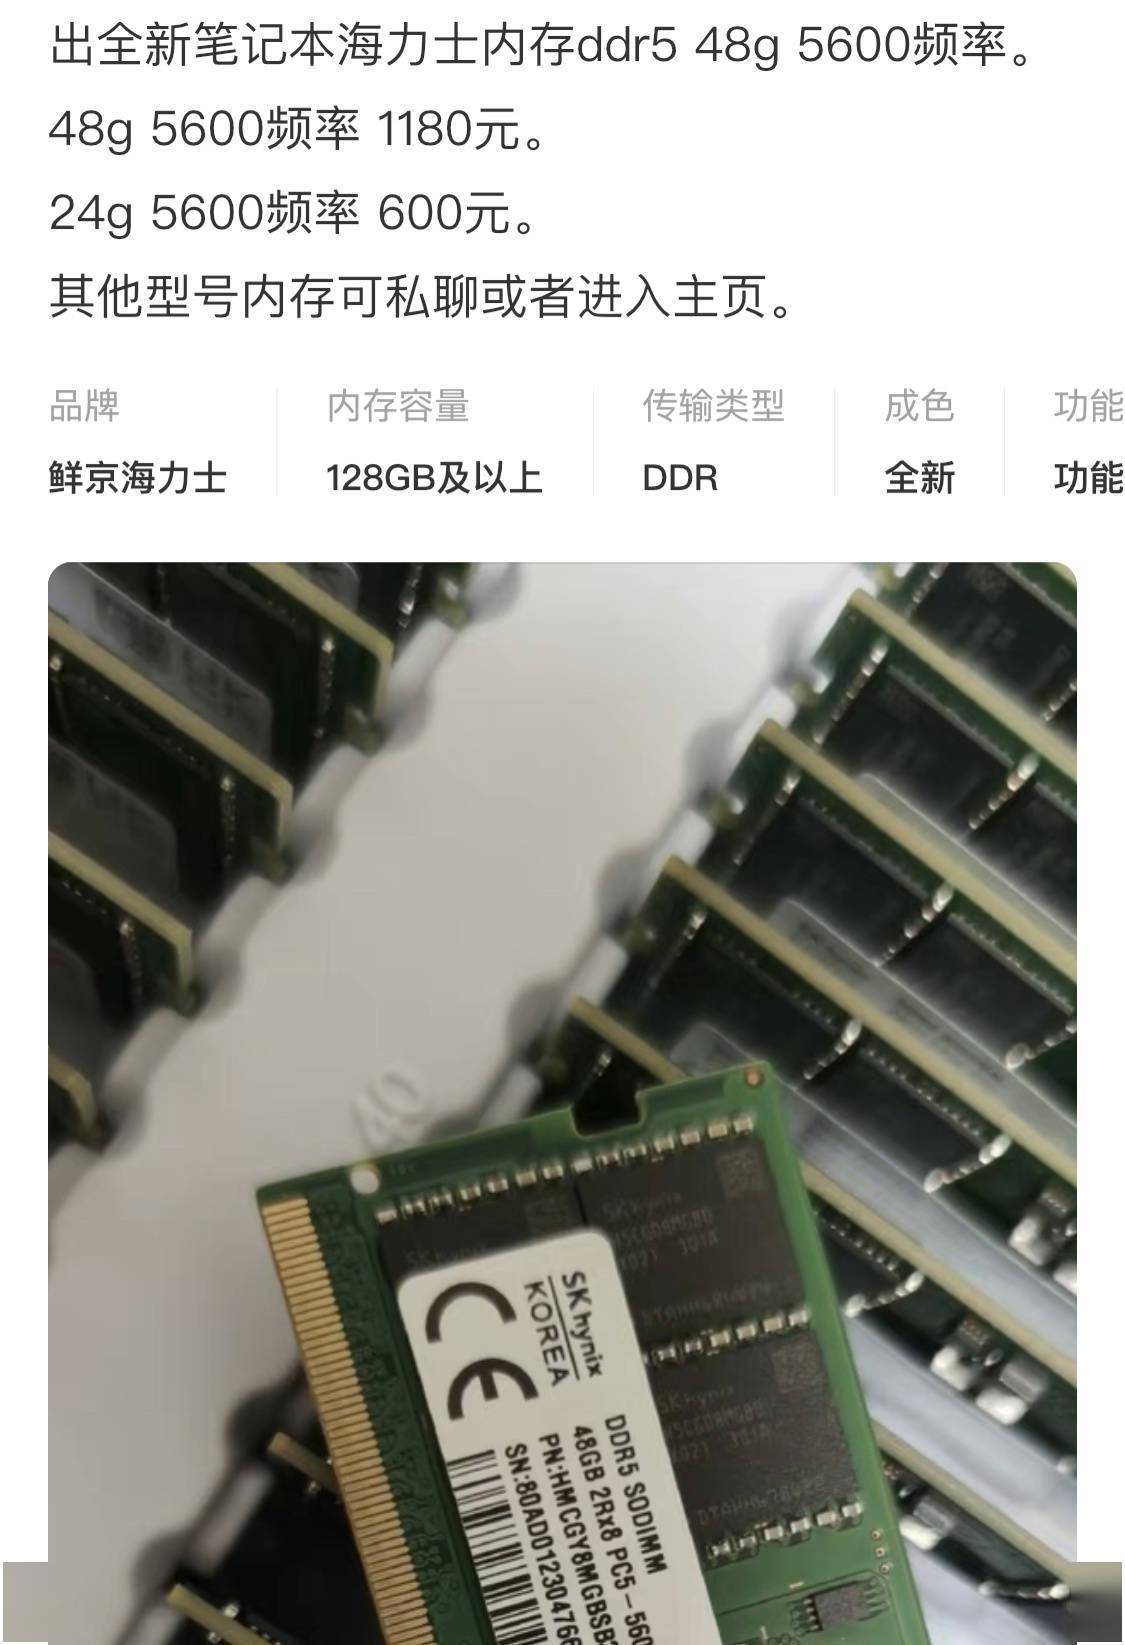 售价 1180 元 ，单条 48GB 笔记本 DDR5 内存开始上市